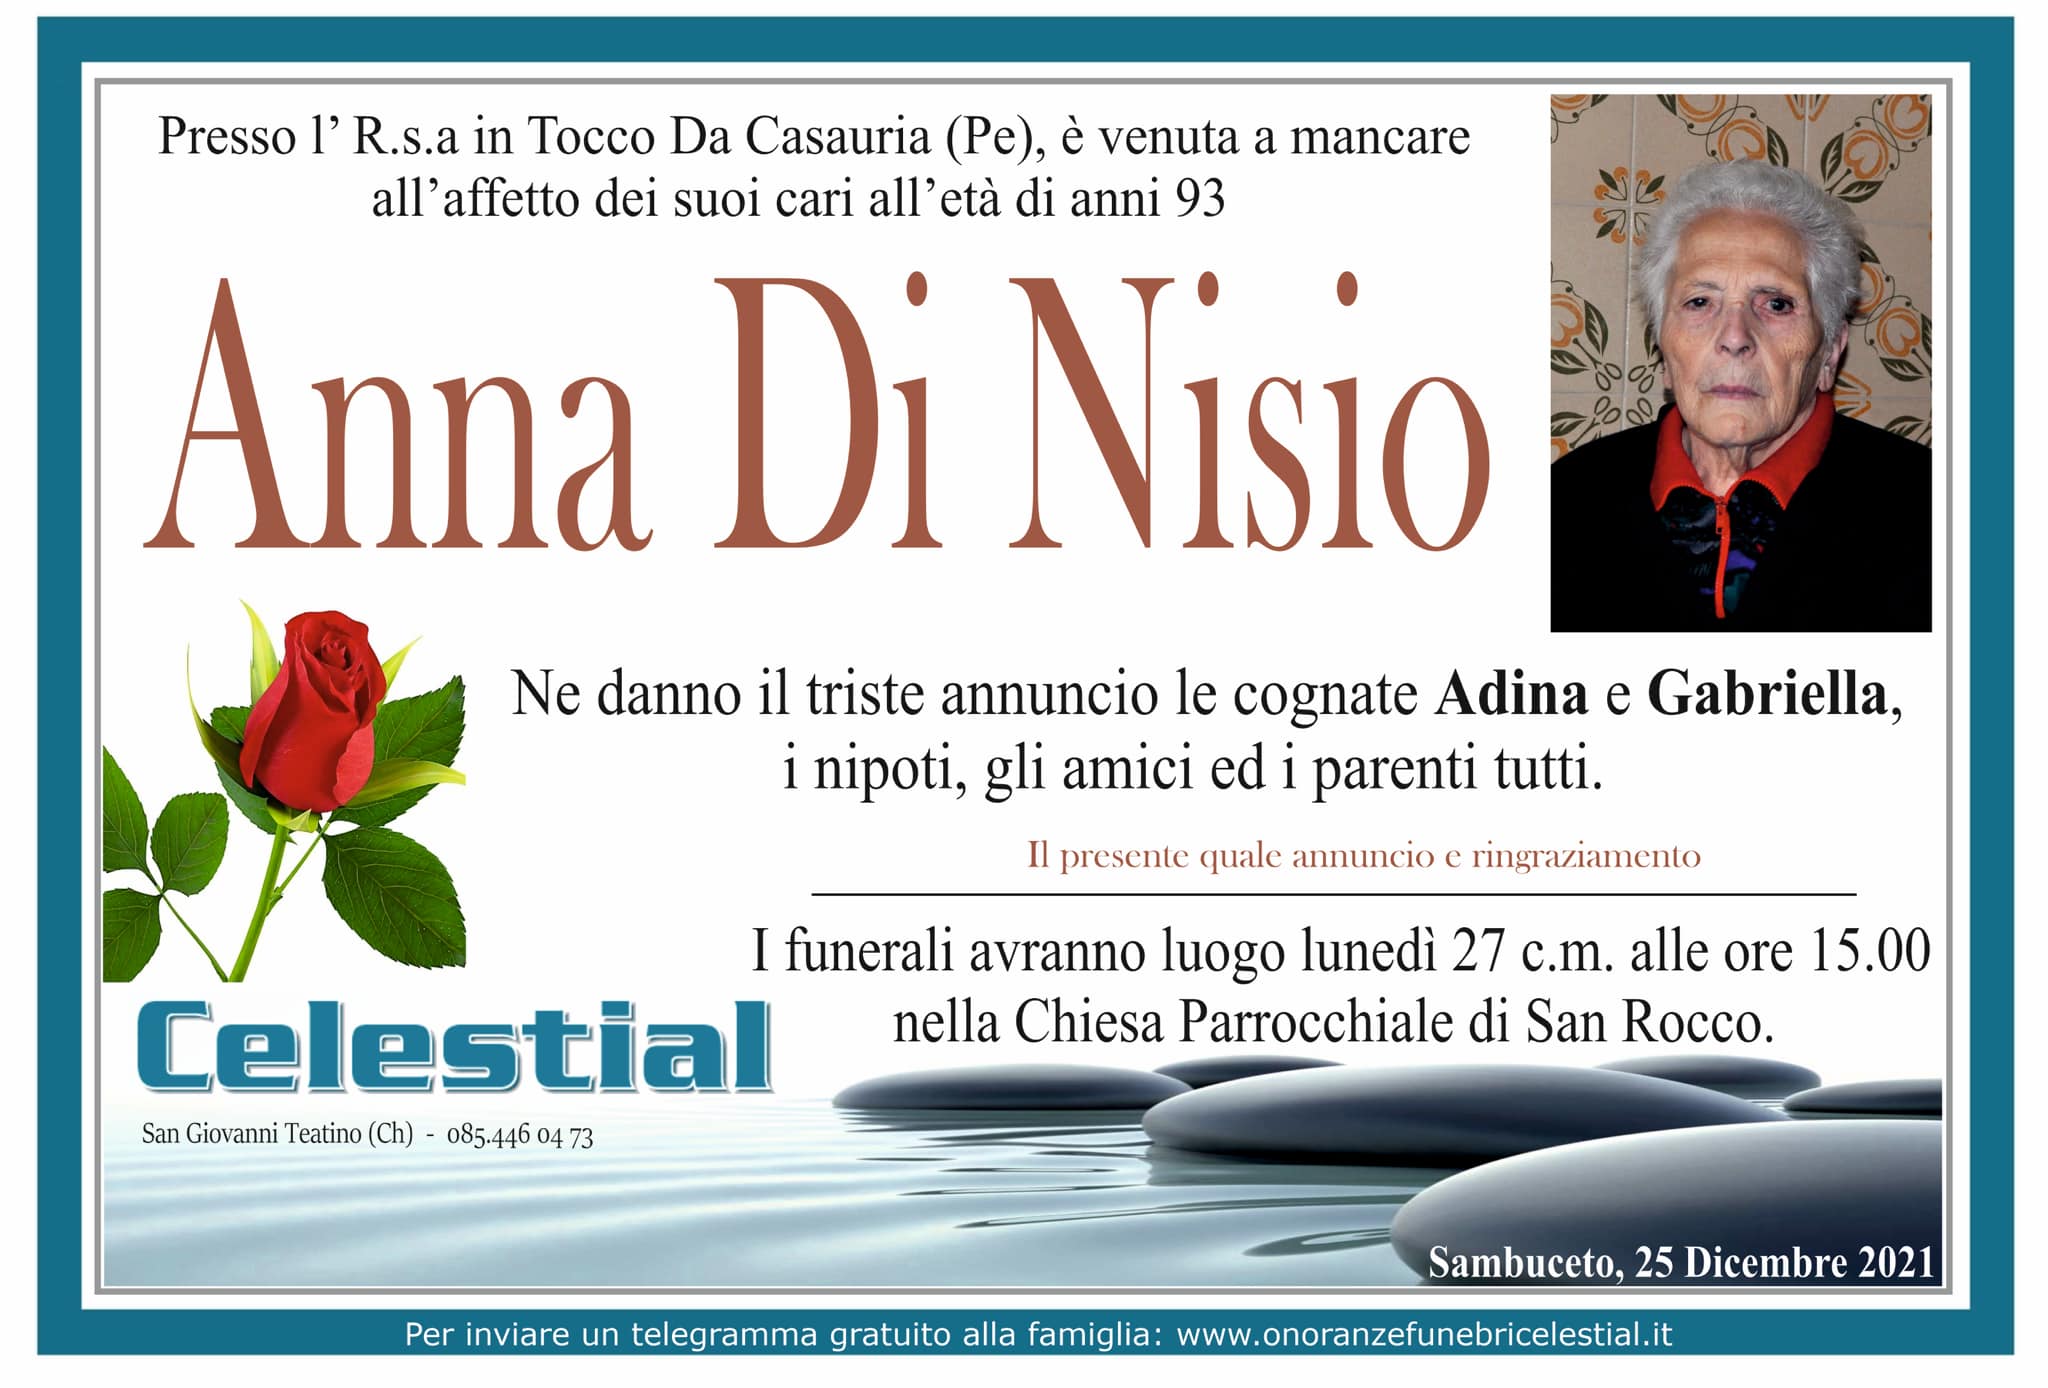 Anna Di Nisio